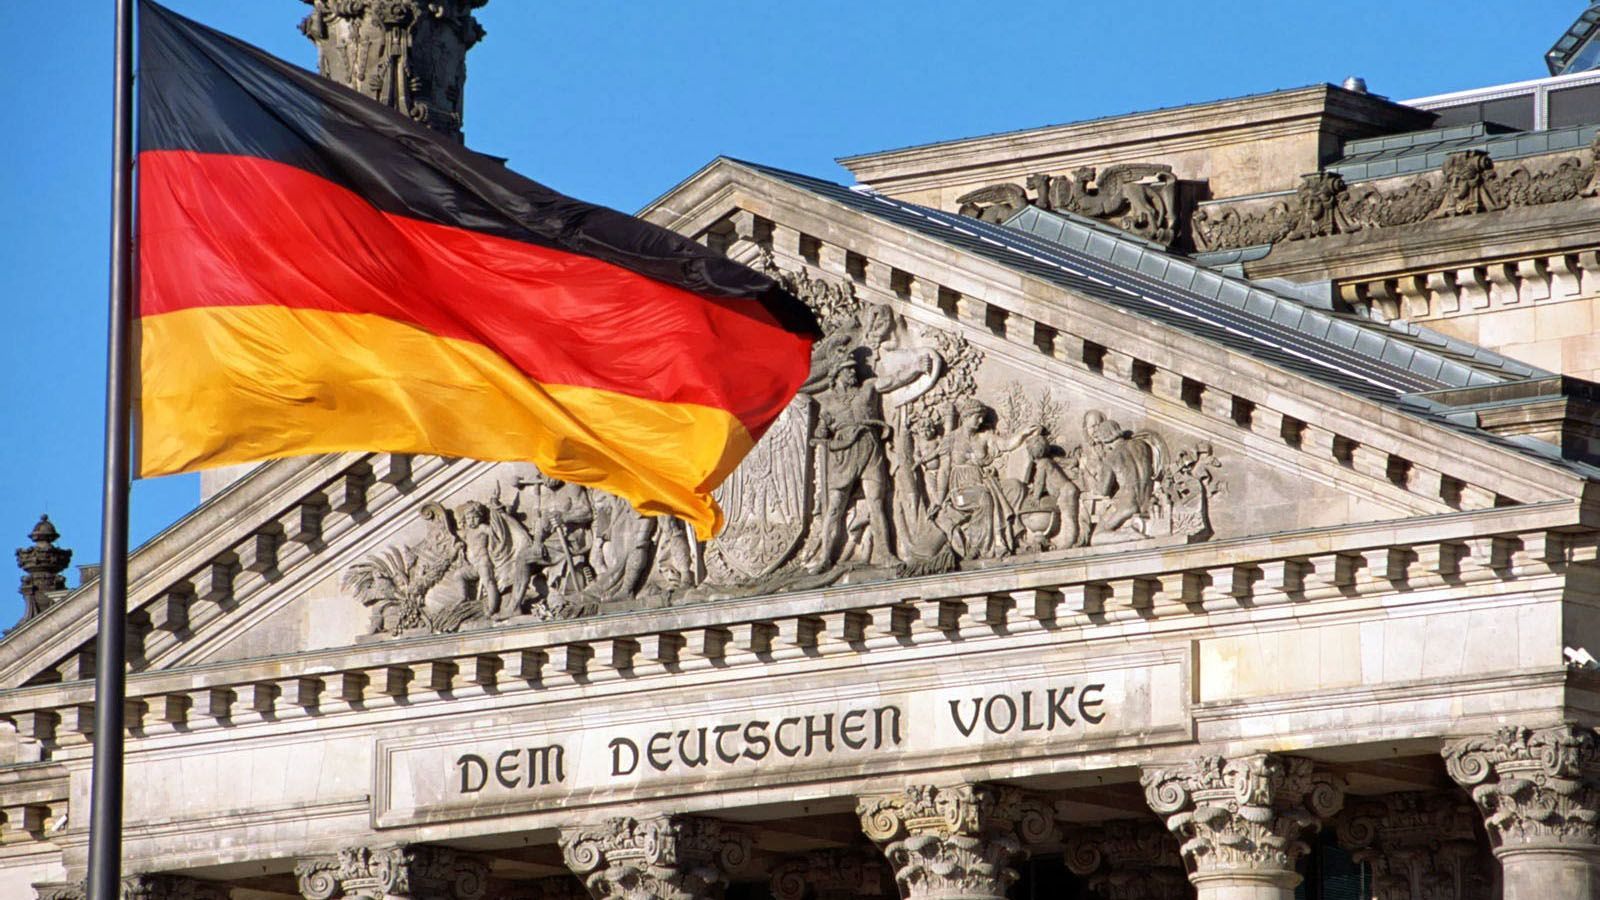 "Було б неправильно говорити про нові санкції": Німеччина здивувала заявою про Керченську кризу